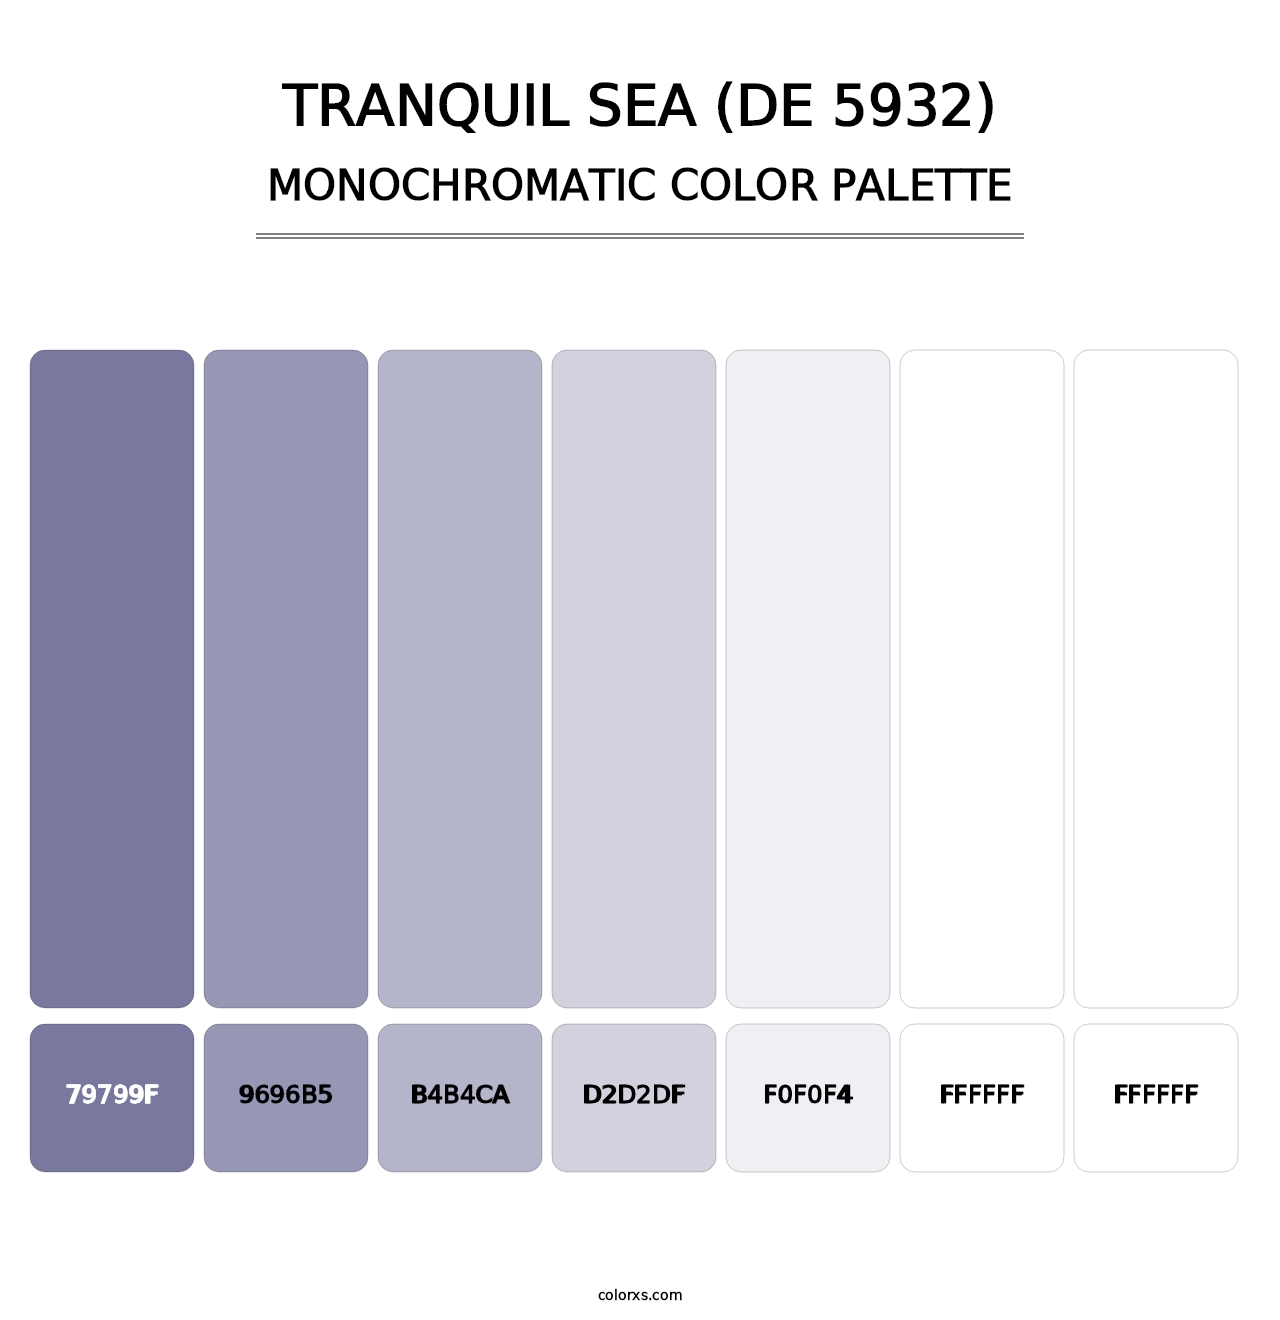 Tranquil Sea (DE 5932) - Monochromatic Color Palette